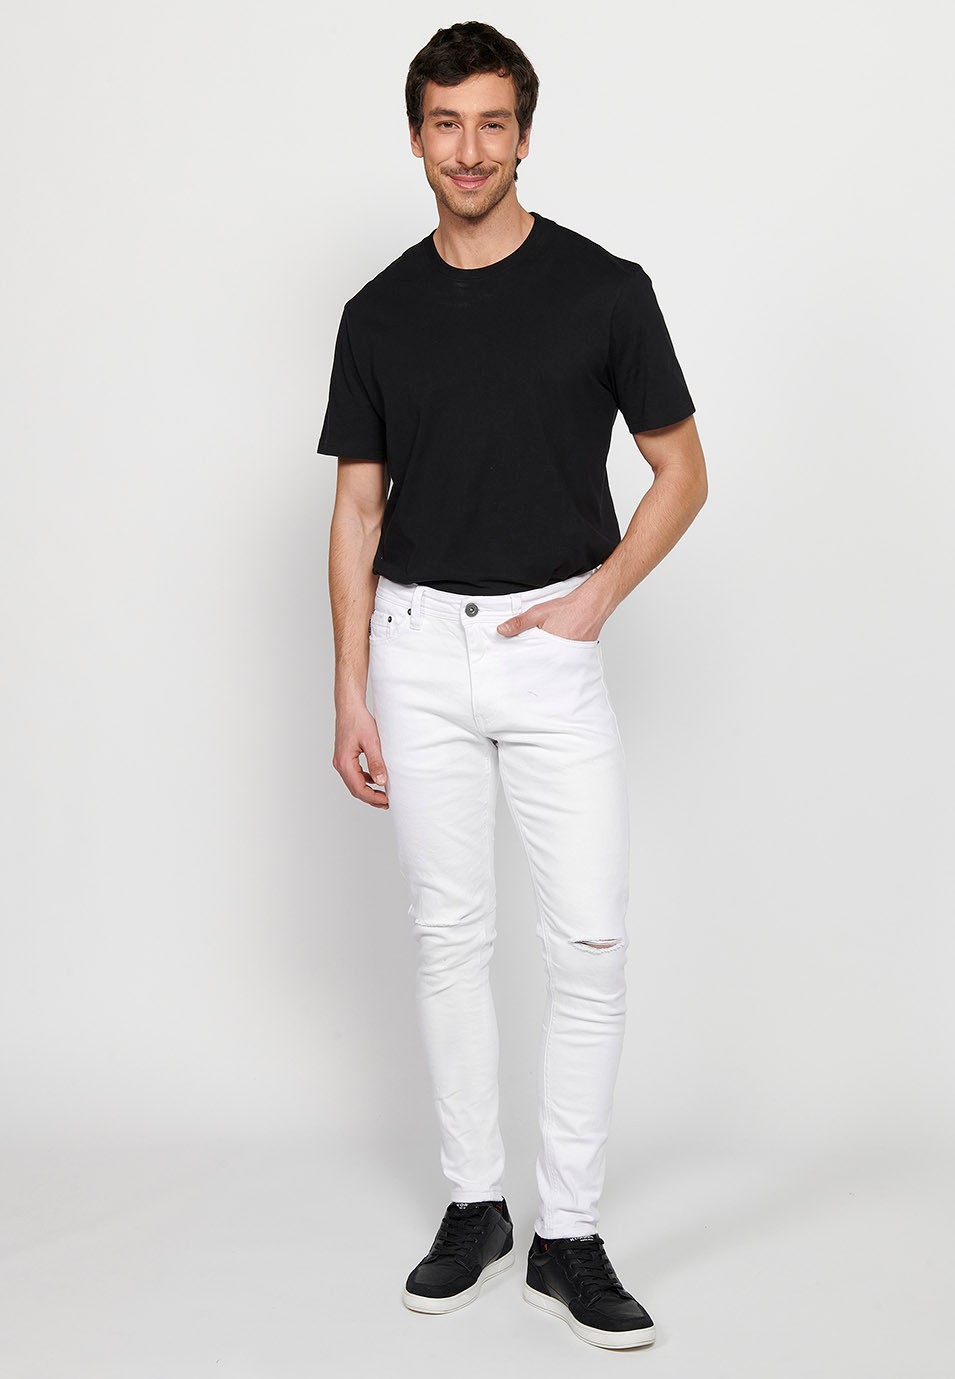 Pantalons jeans super skinny amb Tancament davanter amb cremallera i botó de Color Denim Blanc per a Home